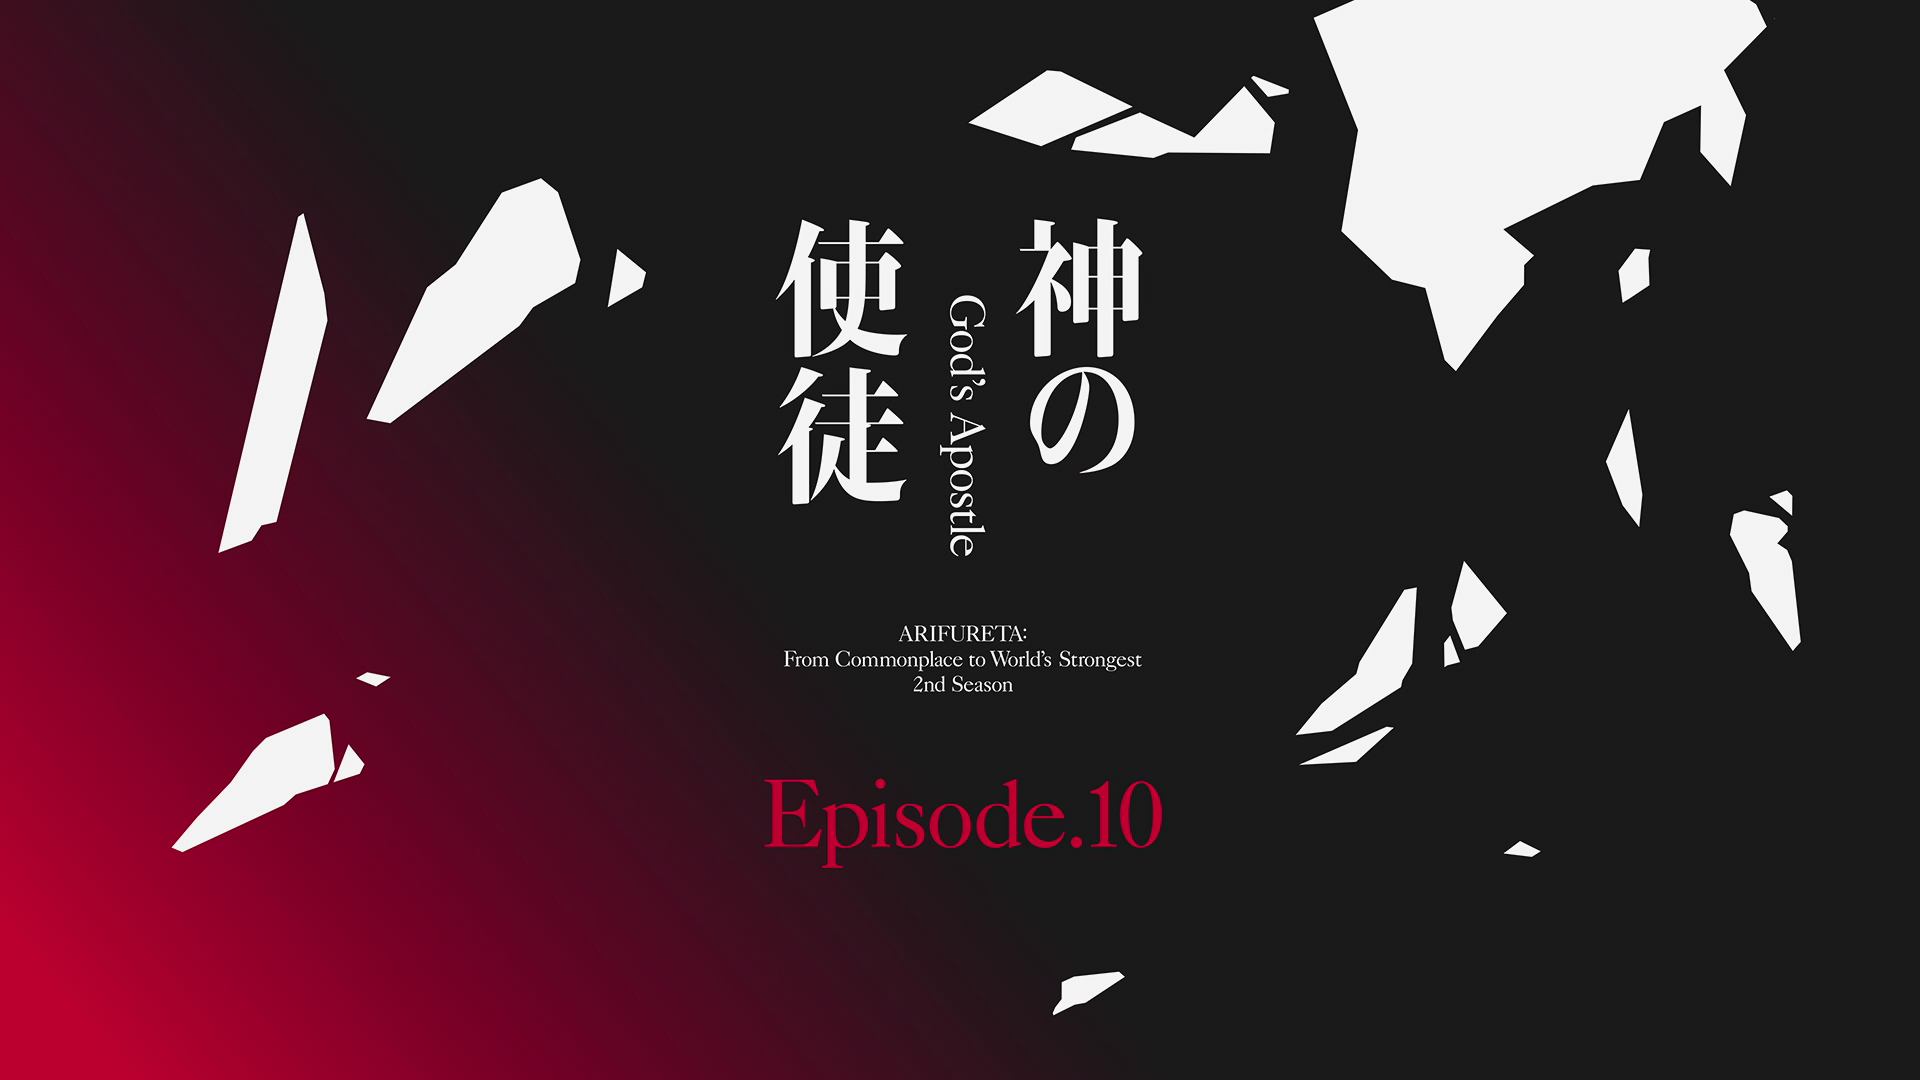 Arifureta Season 2 Episode 13, new OVA episode release date